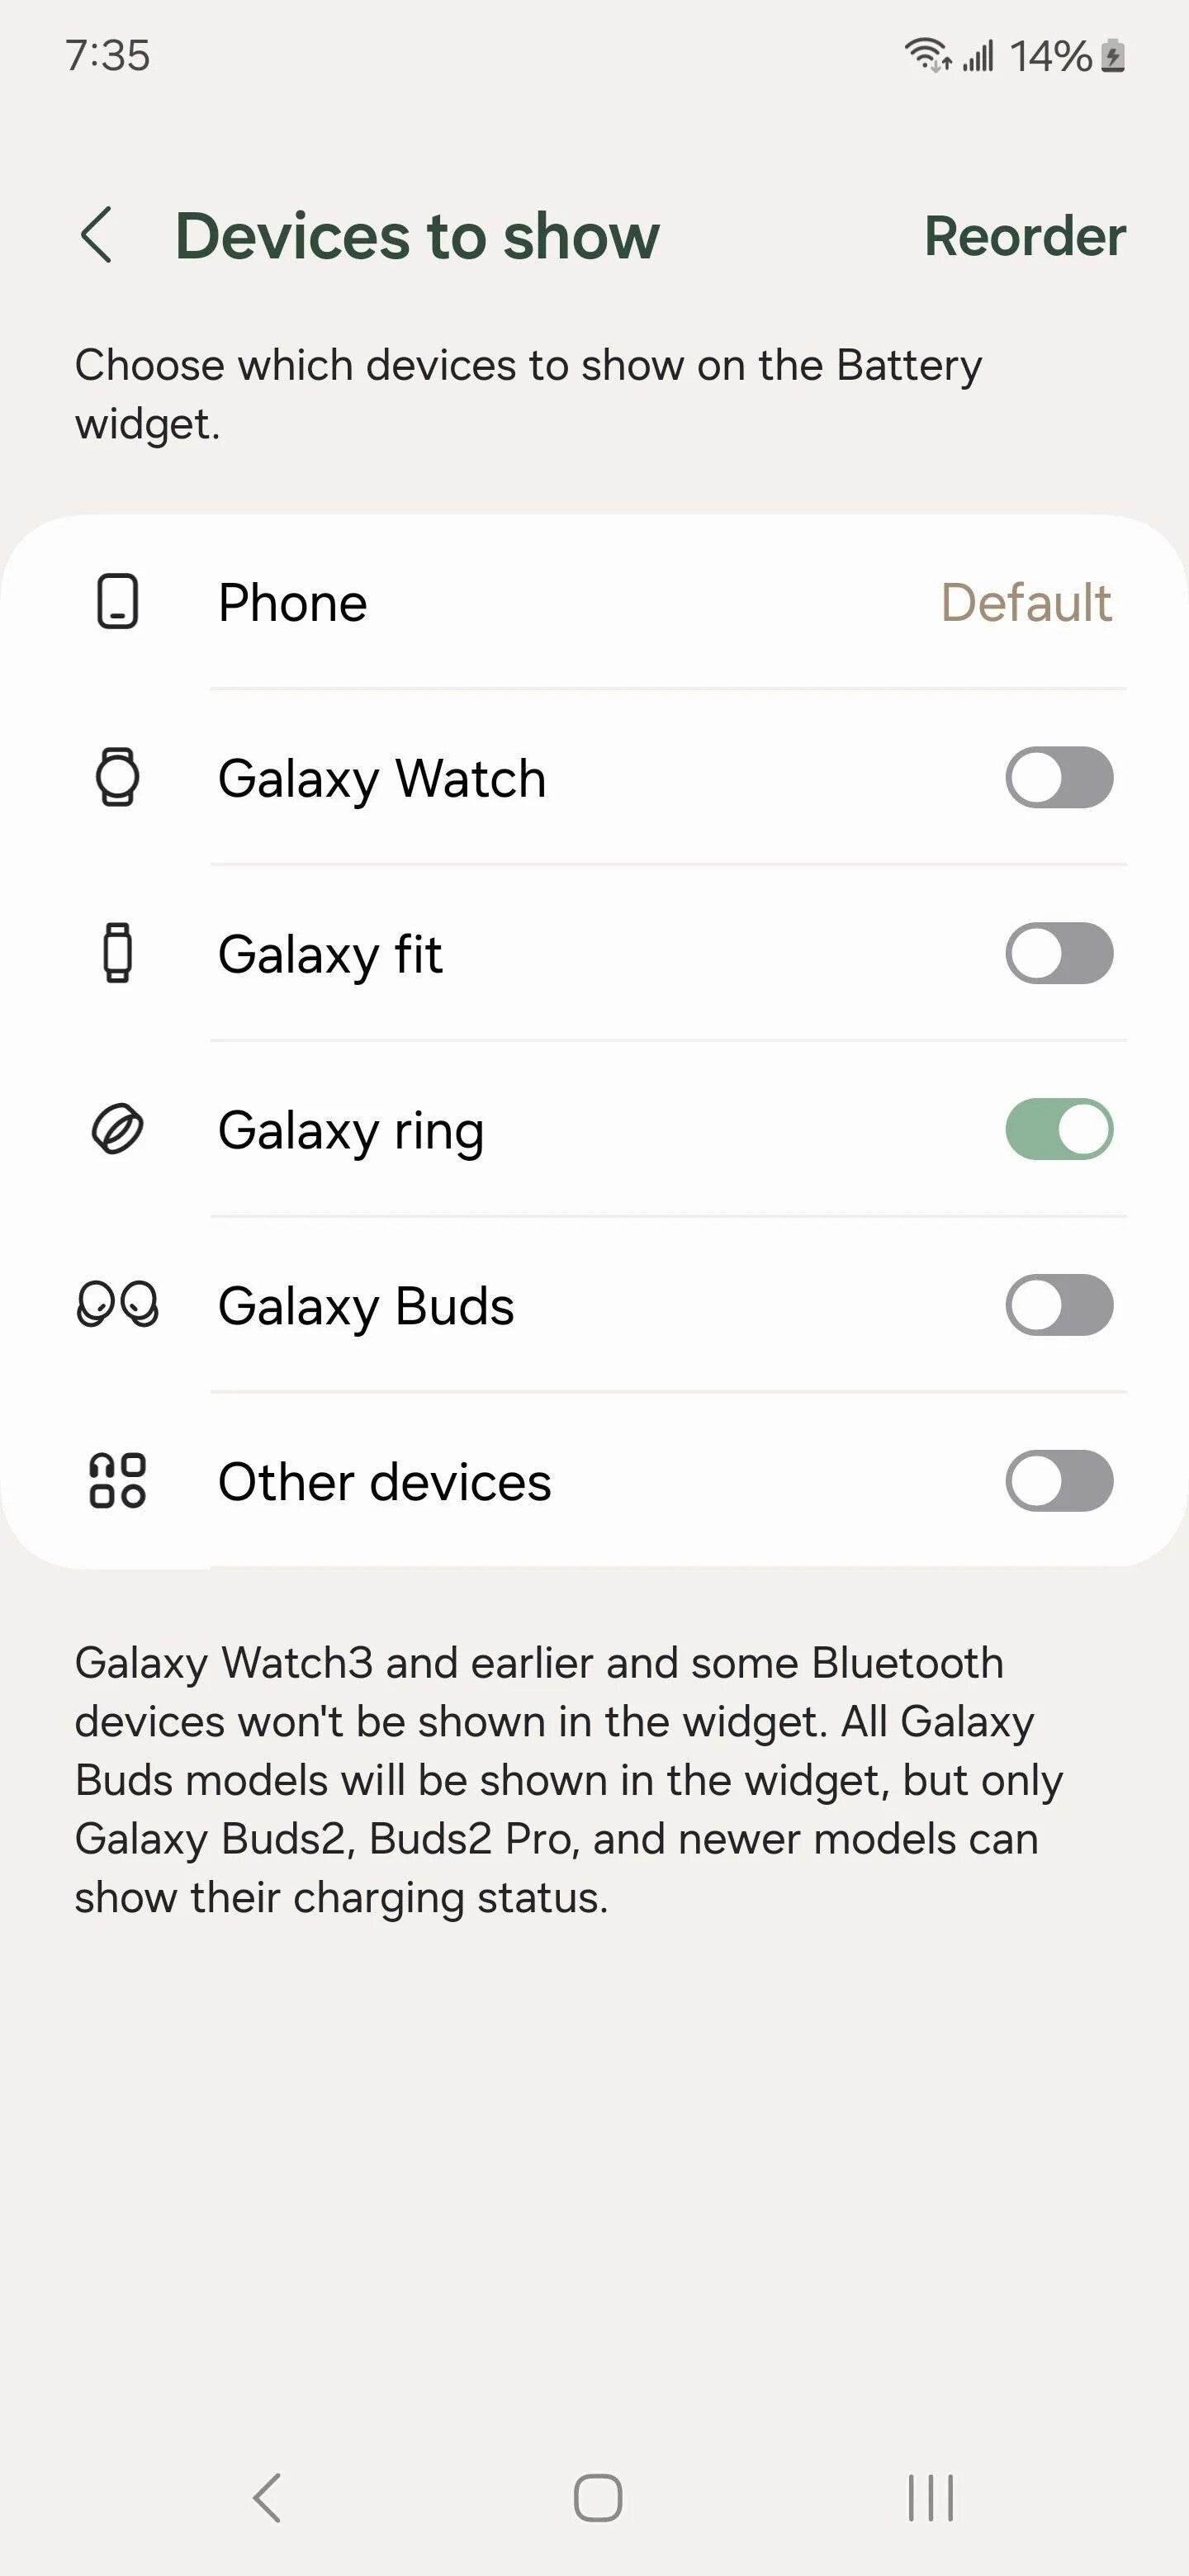 Galaxy Ring, Good Lock uygulamasında görünüyor (Resim Kredisi –SpottedMe/Reddit) - Lansmandan önce Samsung Galaxy Ring, Good Lock uygulamasında sürpriz bir görünüm sergiliyor